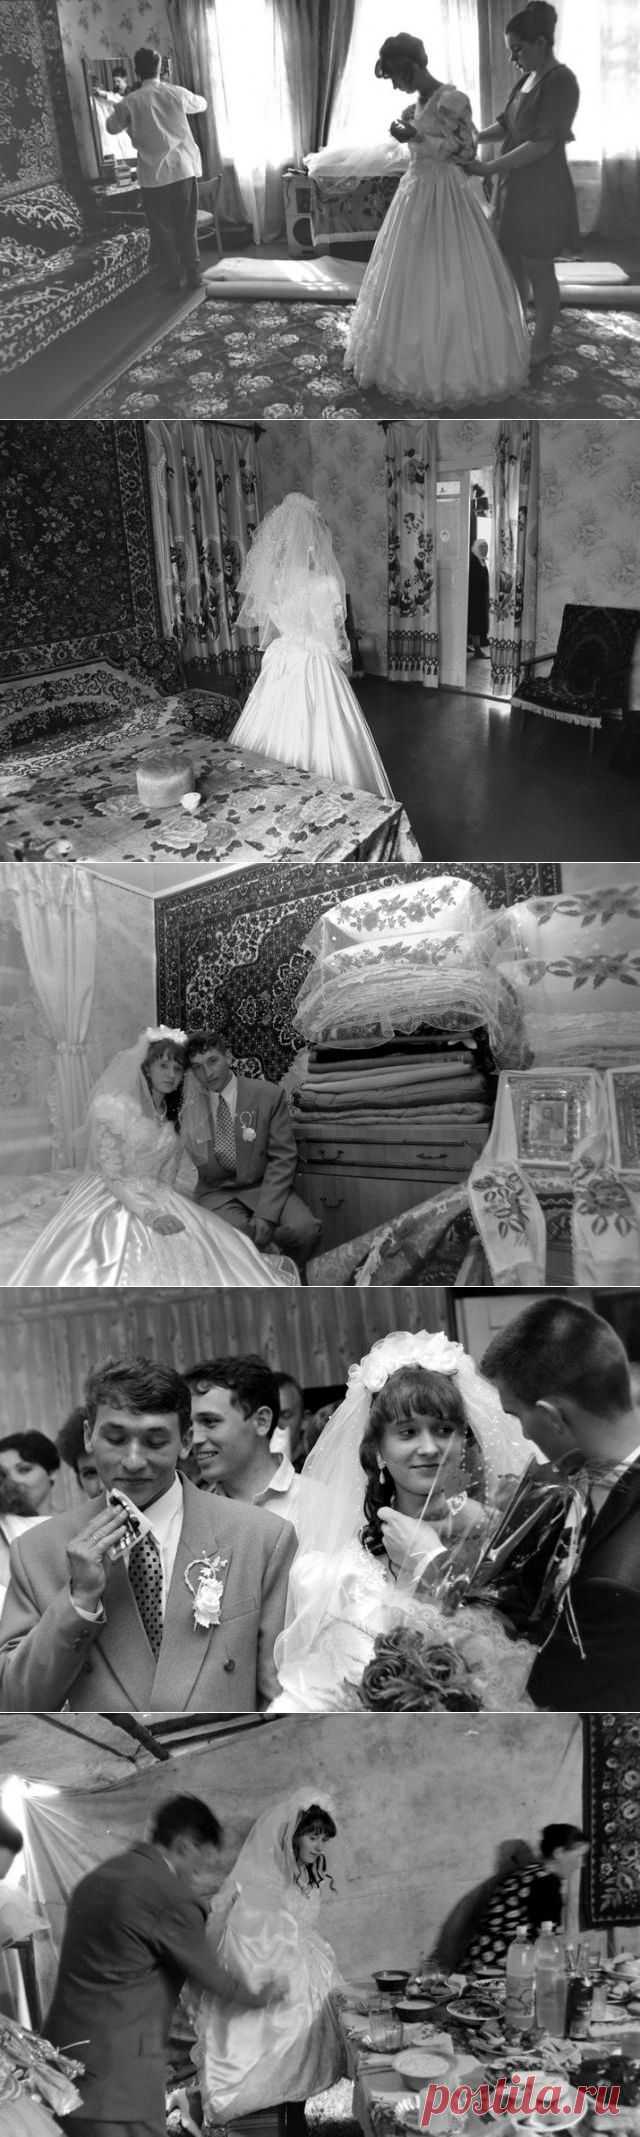 Деревенская свадьба (33 фото) | PulsON — все самые интересные события в мире.